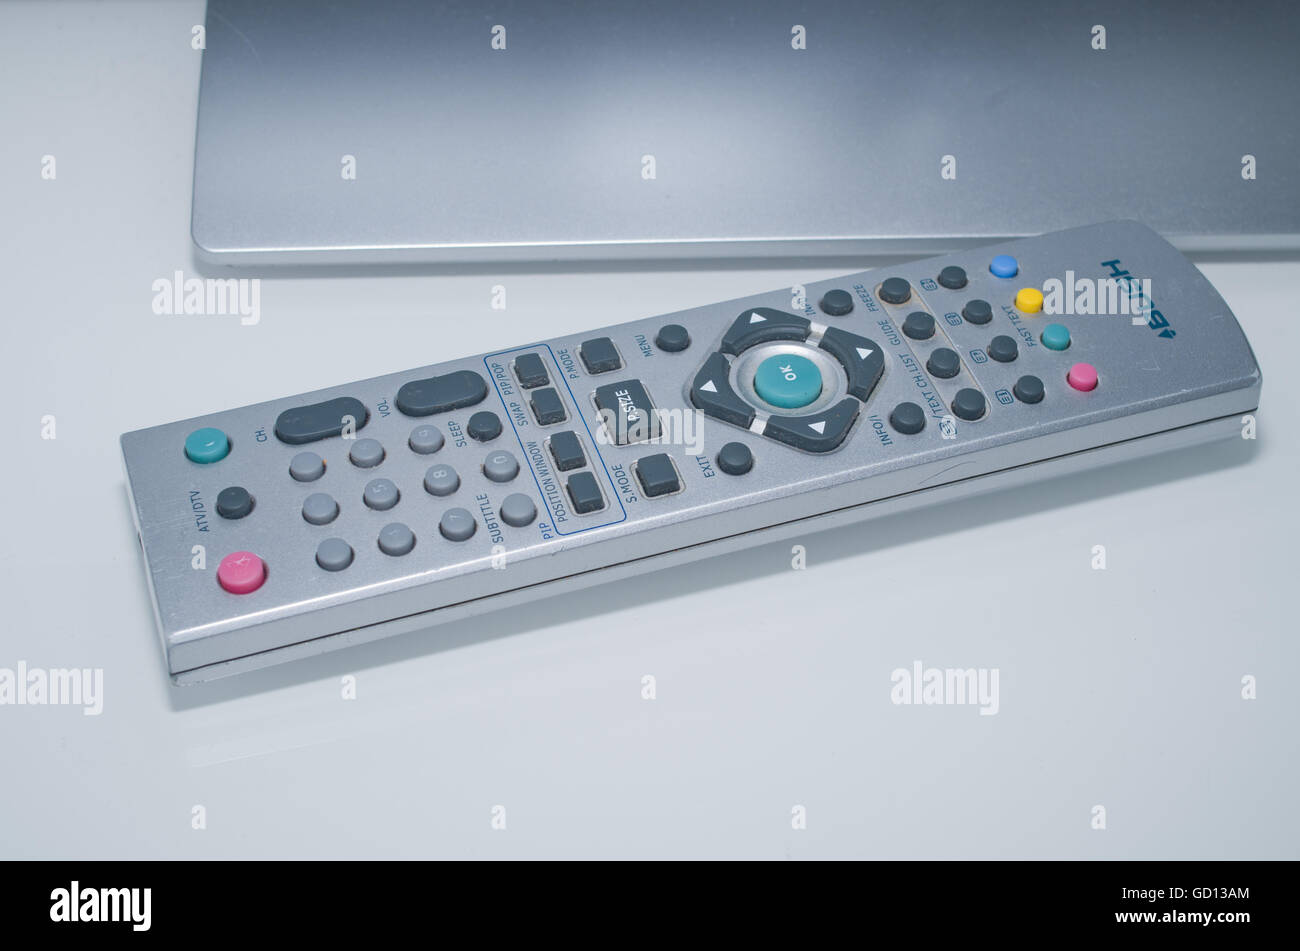 TV Remote control Stock Photo